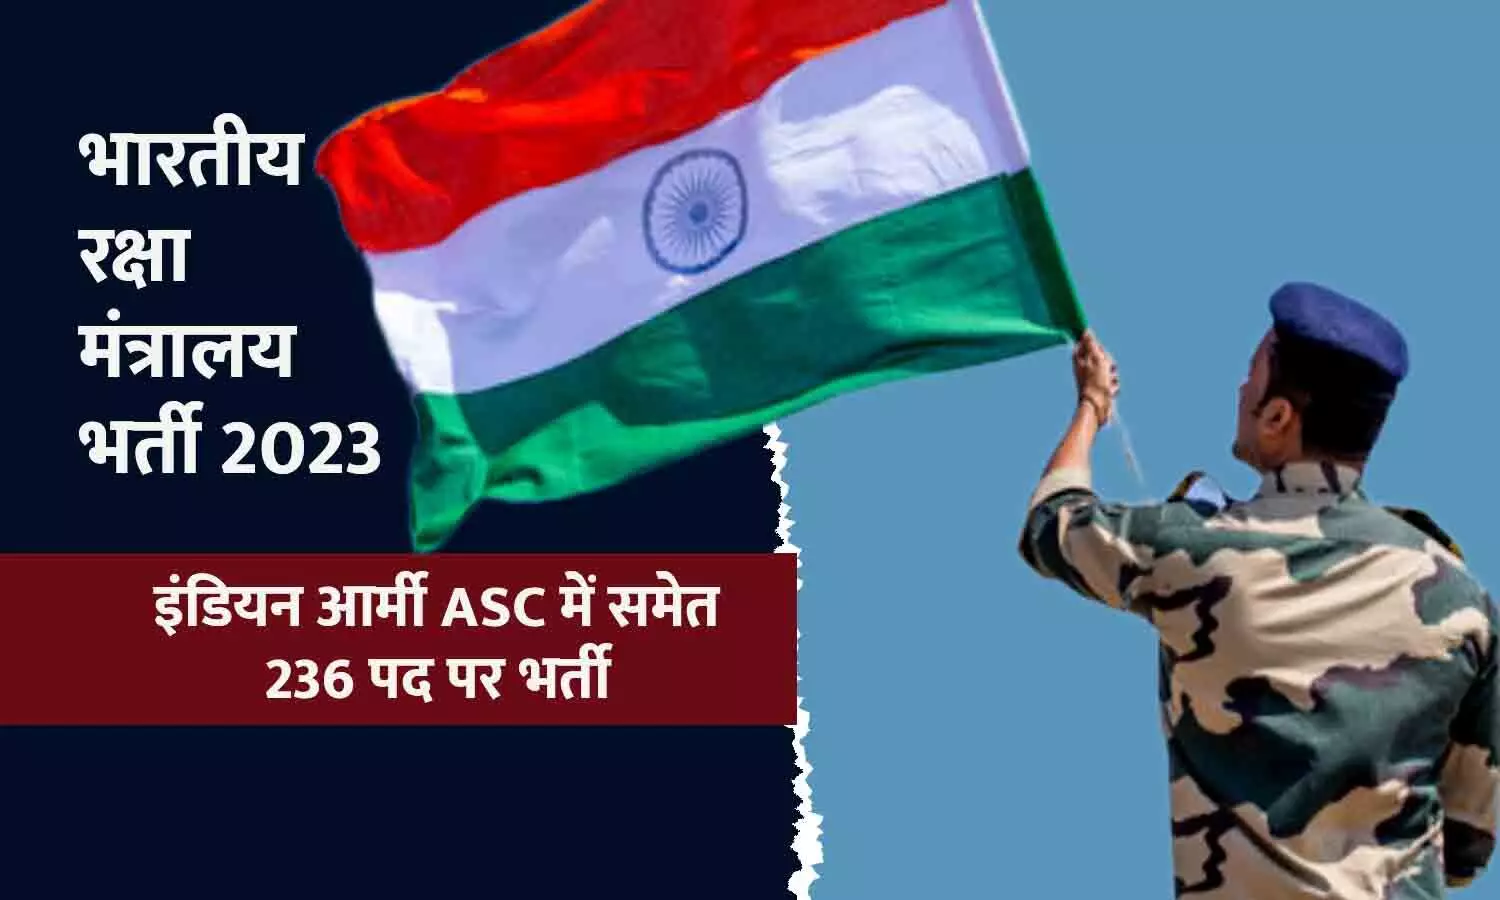 भारतीय रक्षा मंत्रालय भर्ती 2023: इंडियन आर्मी ASC में 236 पद पर सरकारी नौकरी का मौका